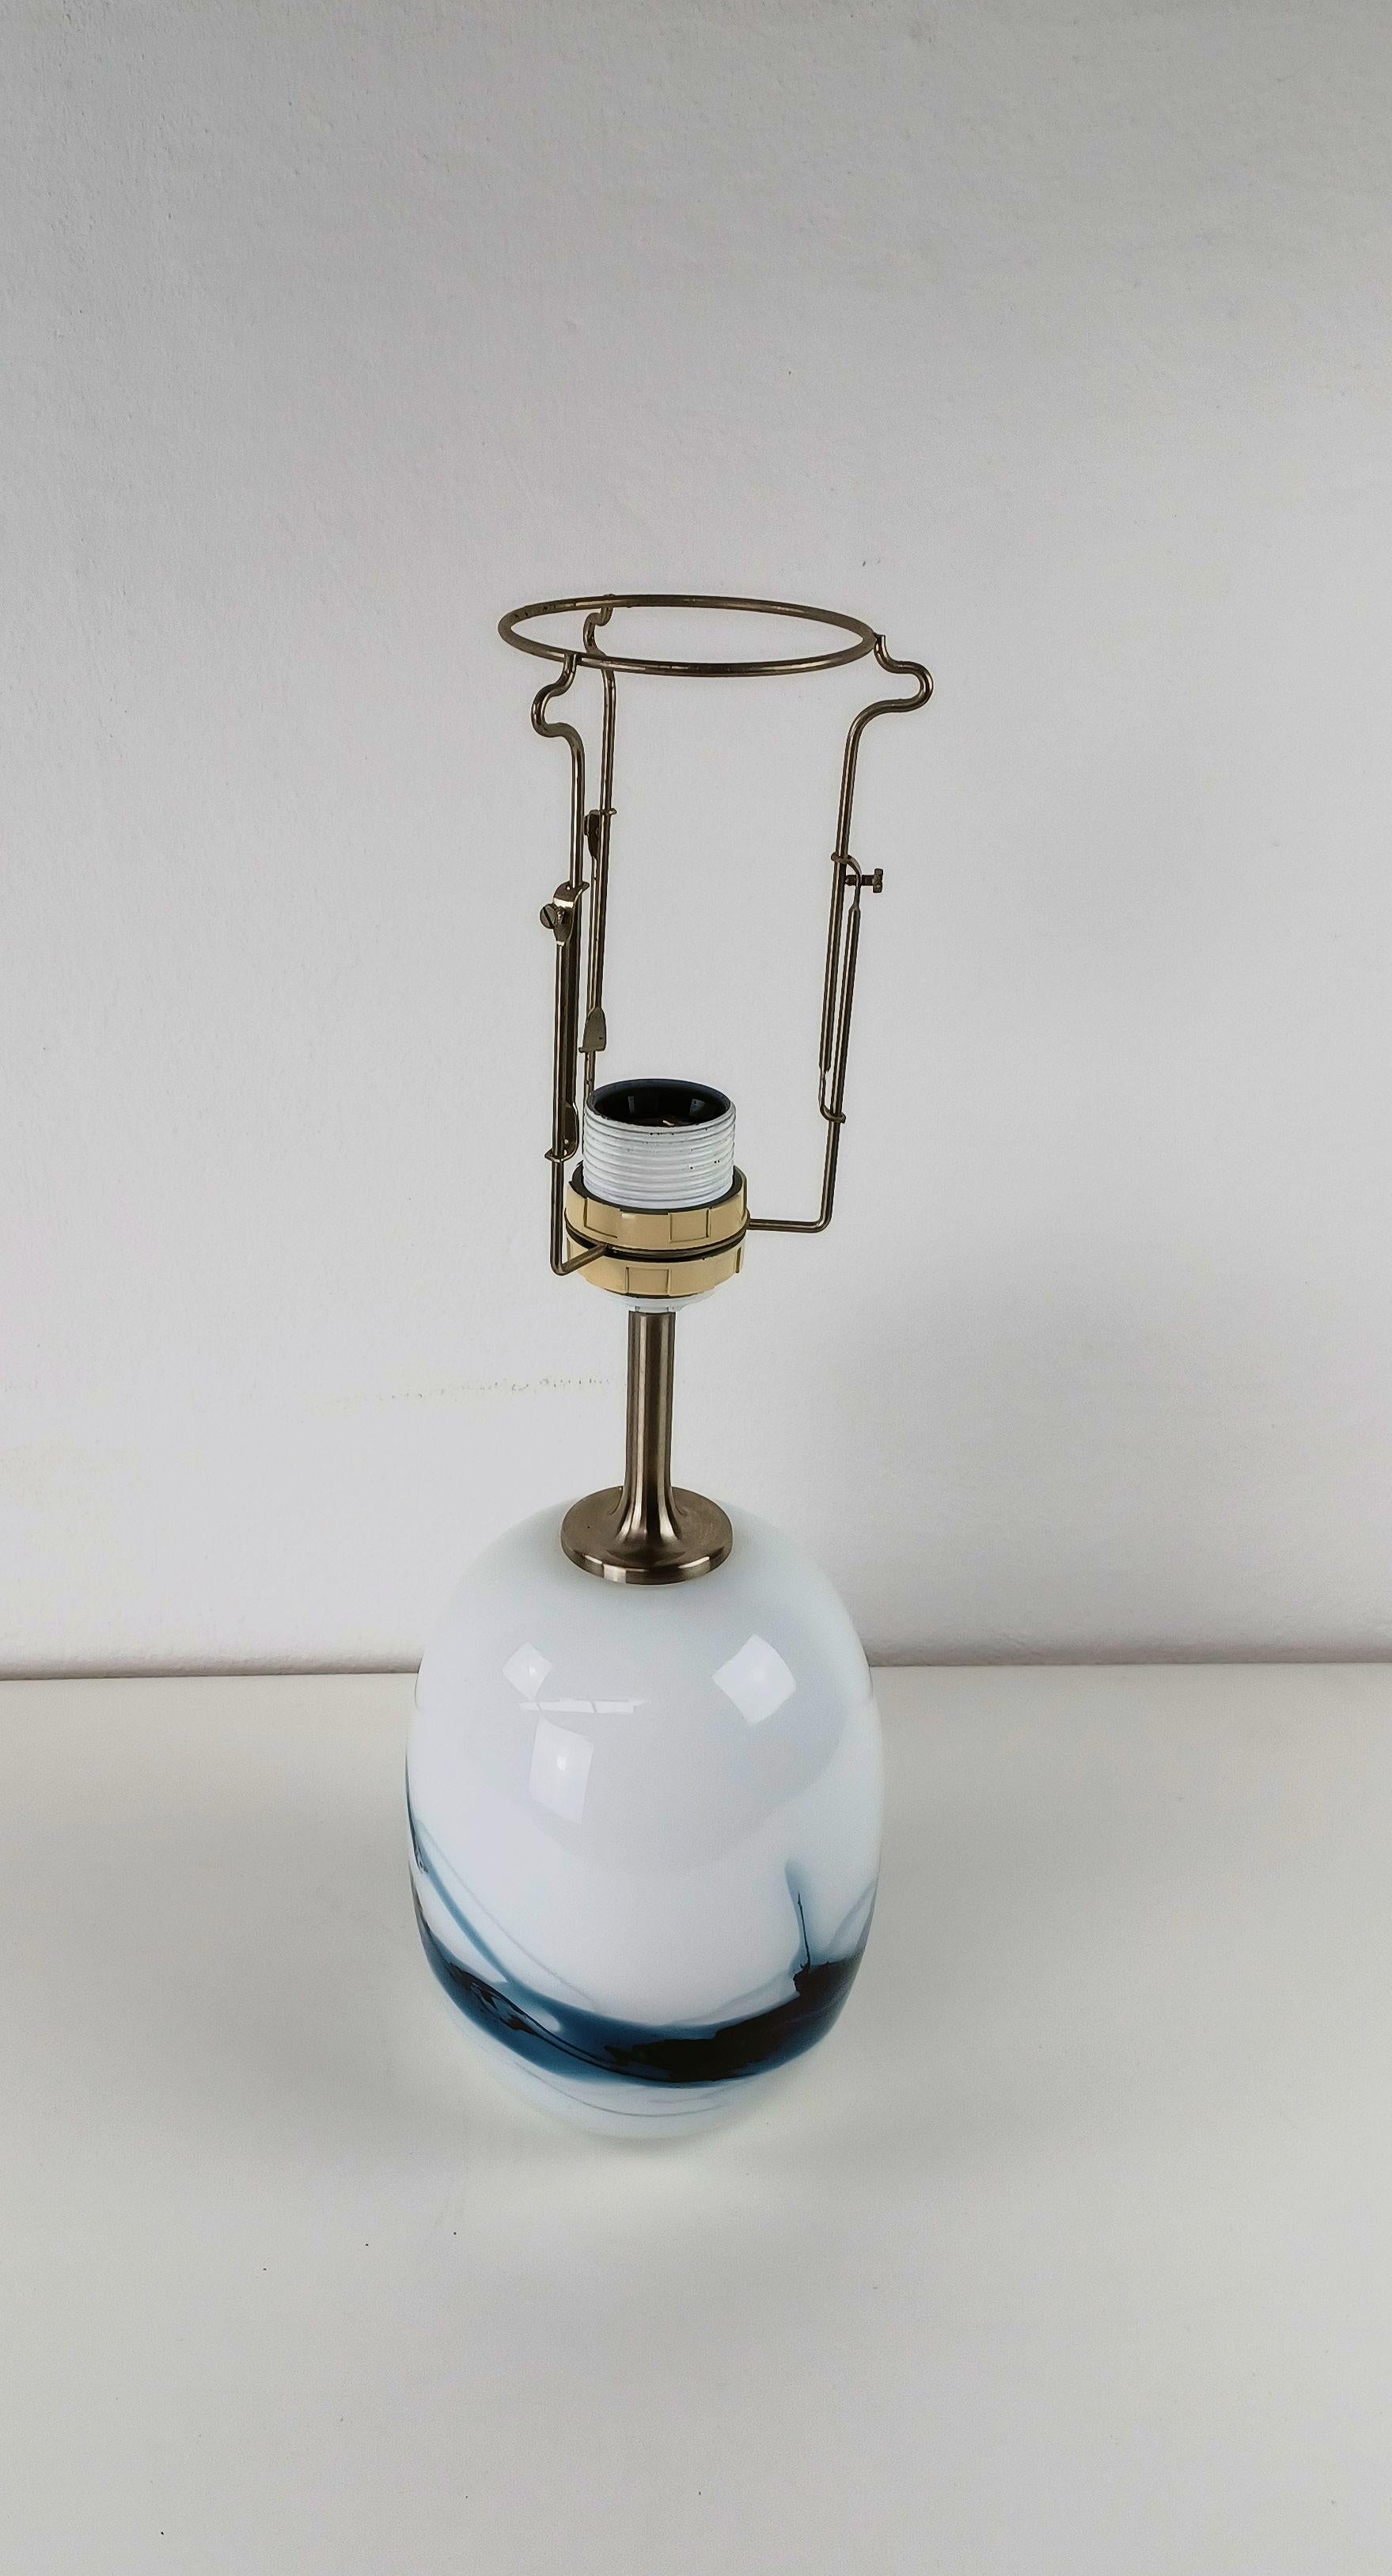 1980's Michael Bang Sakura Tischlampe aus mundgeblasenem Glas

Die Tischleuchte wurde 1984 von Mickael Bang für Holmegaard Glass entworfen und ist in sehr gutem Zustand.

Die Höhe der Tischleuchte reicht bis zum Beginn des Sockels.